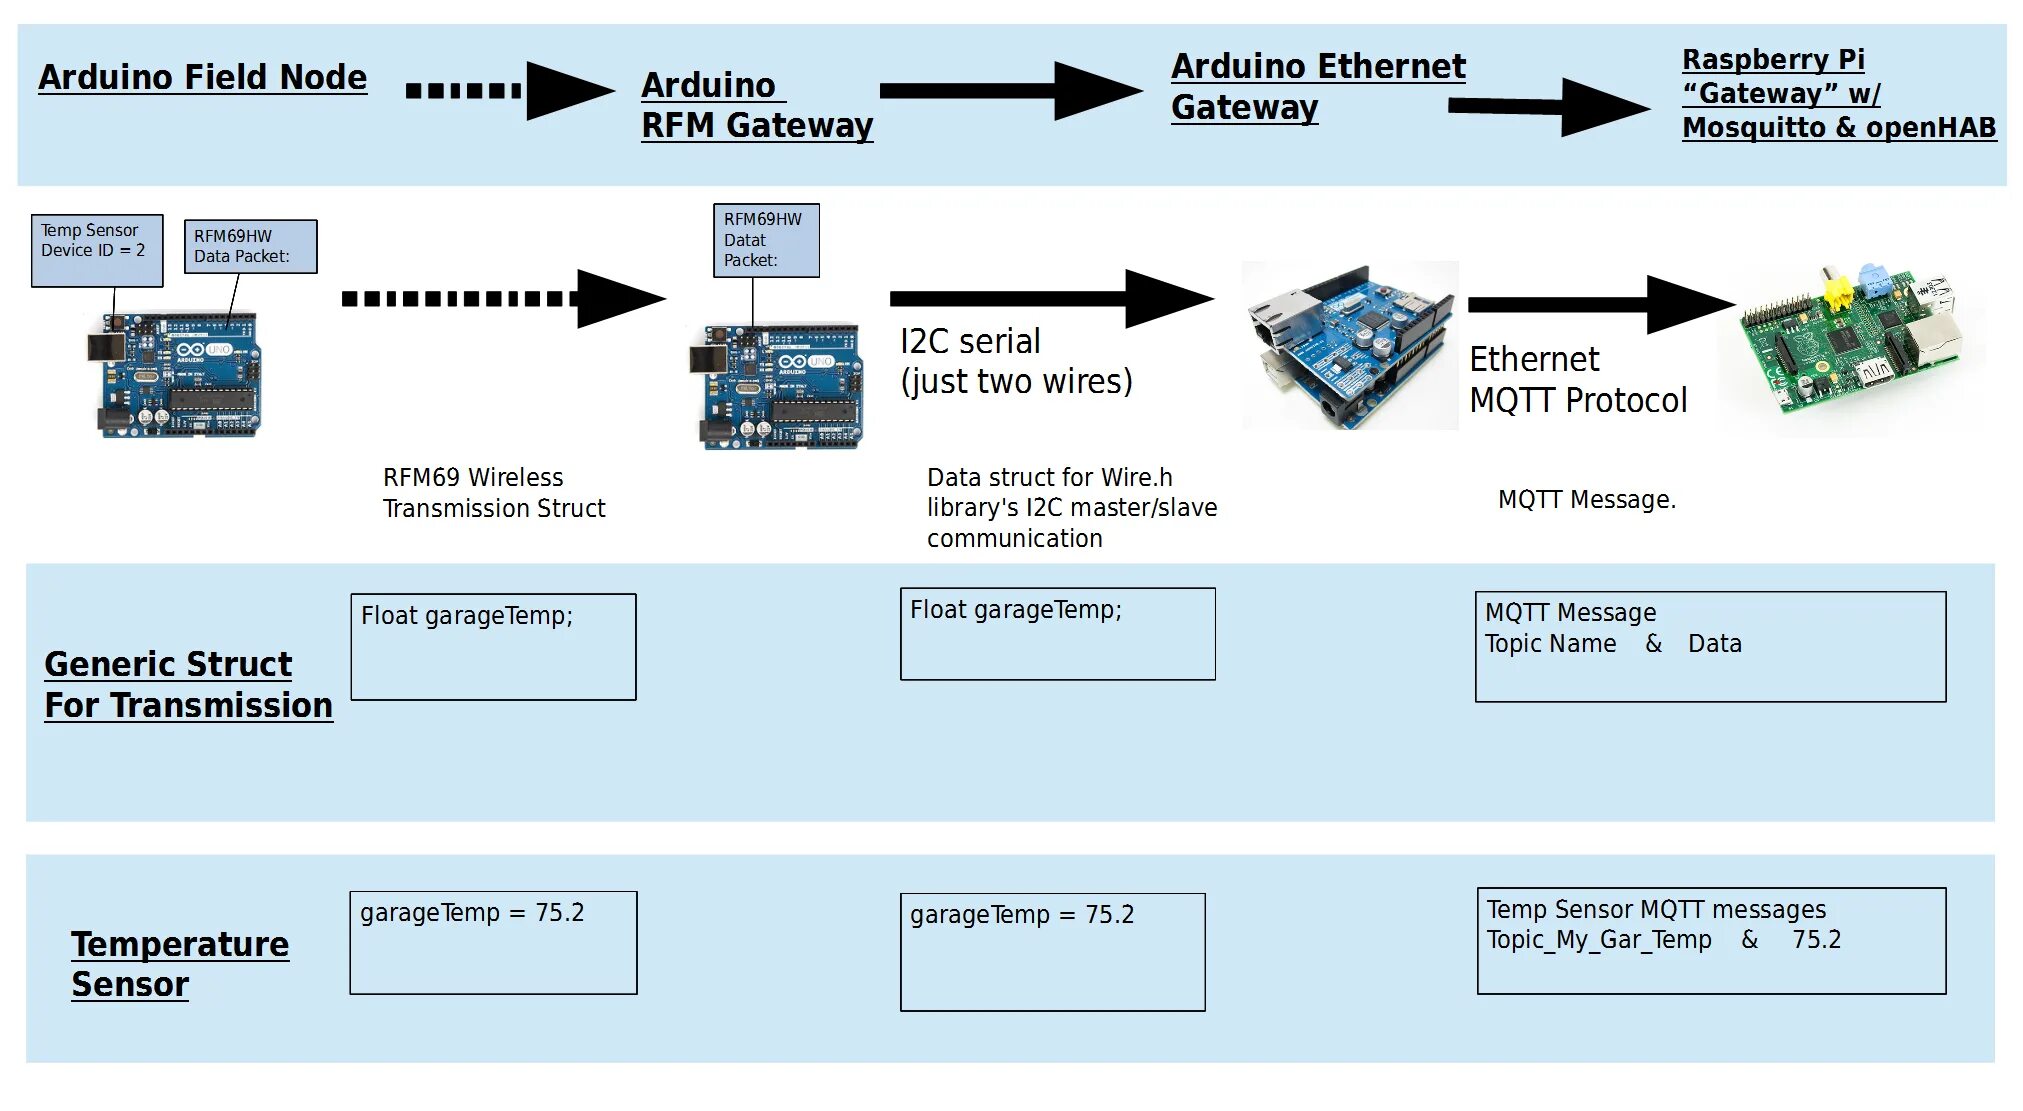 Messages topics. Протоколы умного дома MQTT. Автоматизация на ардуино. Ардуино MQTT. Arduino Ethernet data.